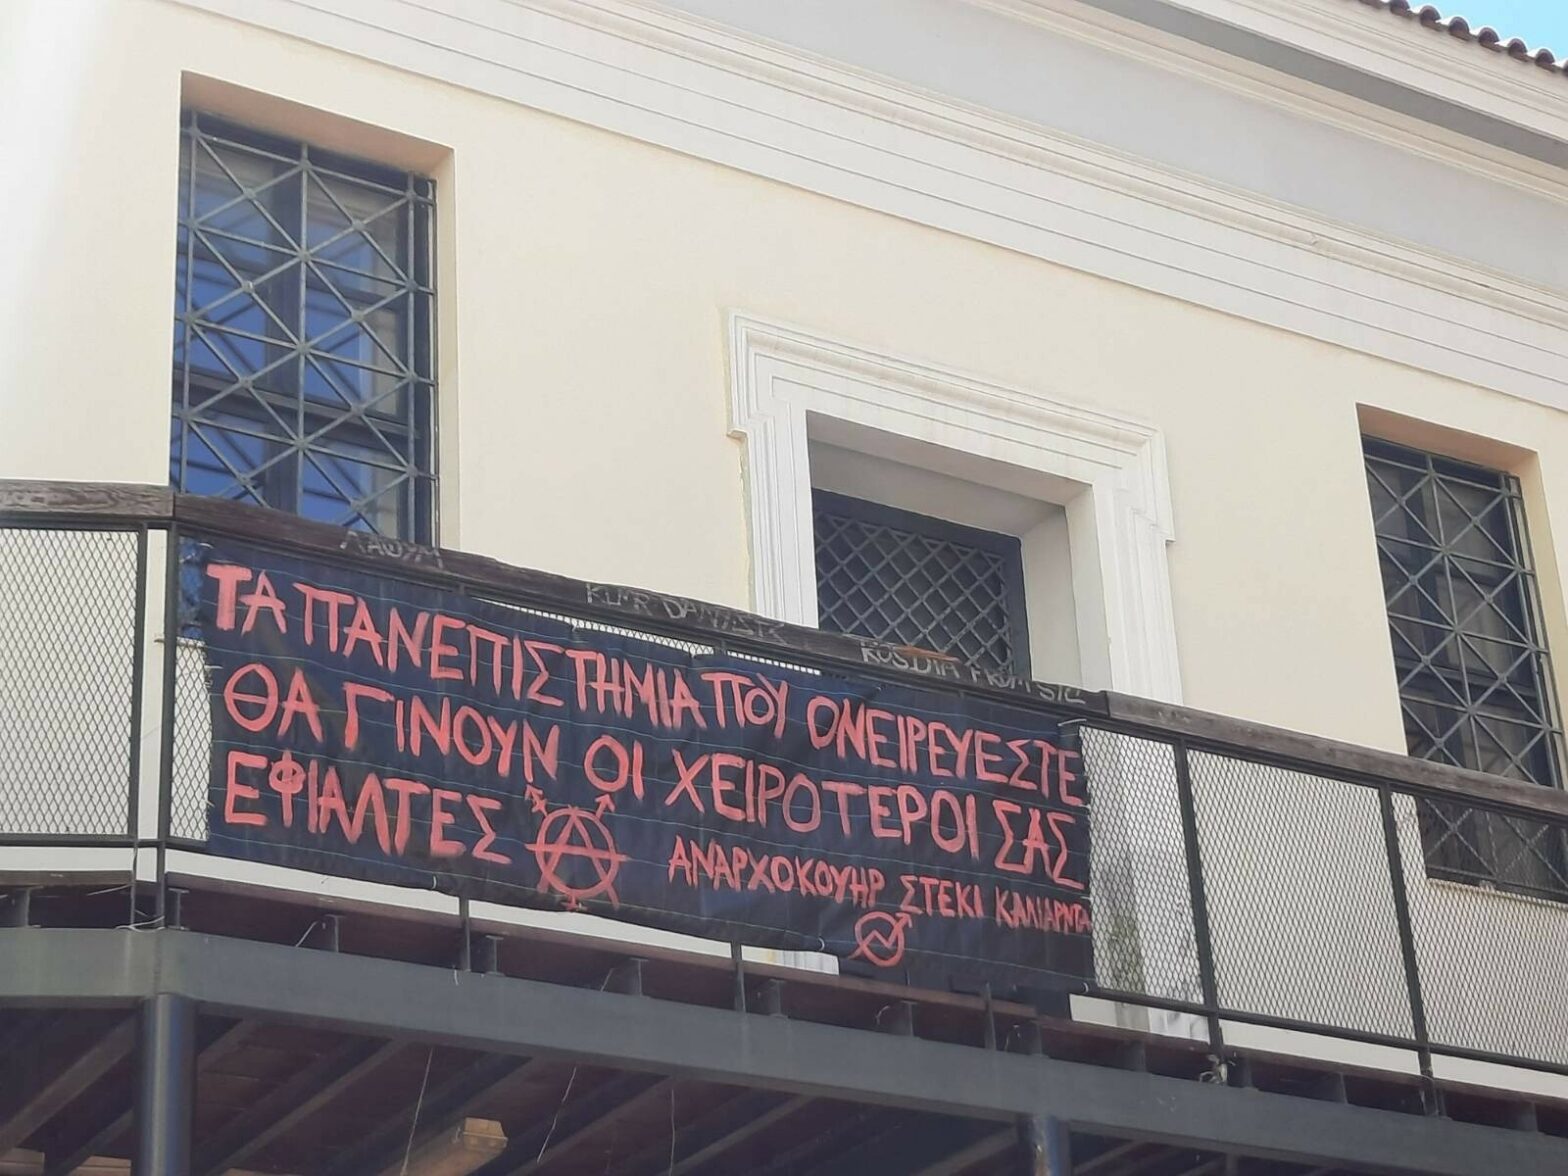 πανό που αναγράφει "τα πανεπιστήμια που ονειρεύεστε θα γίνουν οι χειρότεροί σας εφιάλτες - αναρχοκουηρ στέκι καλιαρντά"